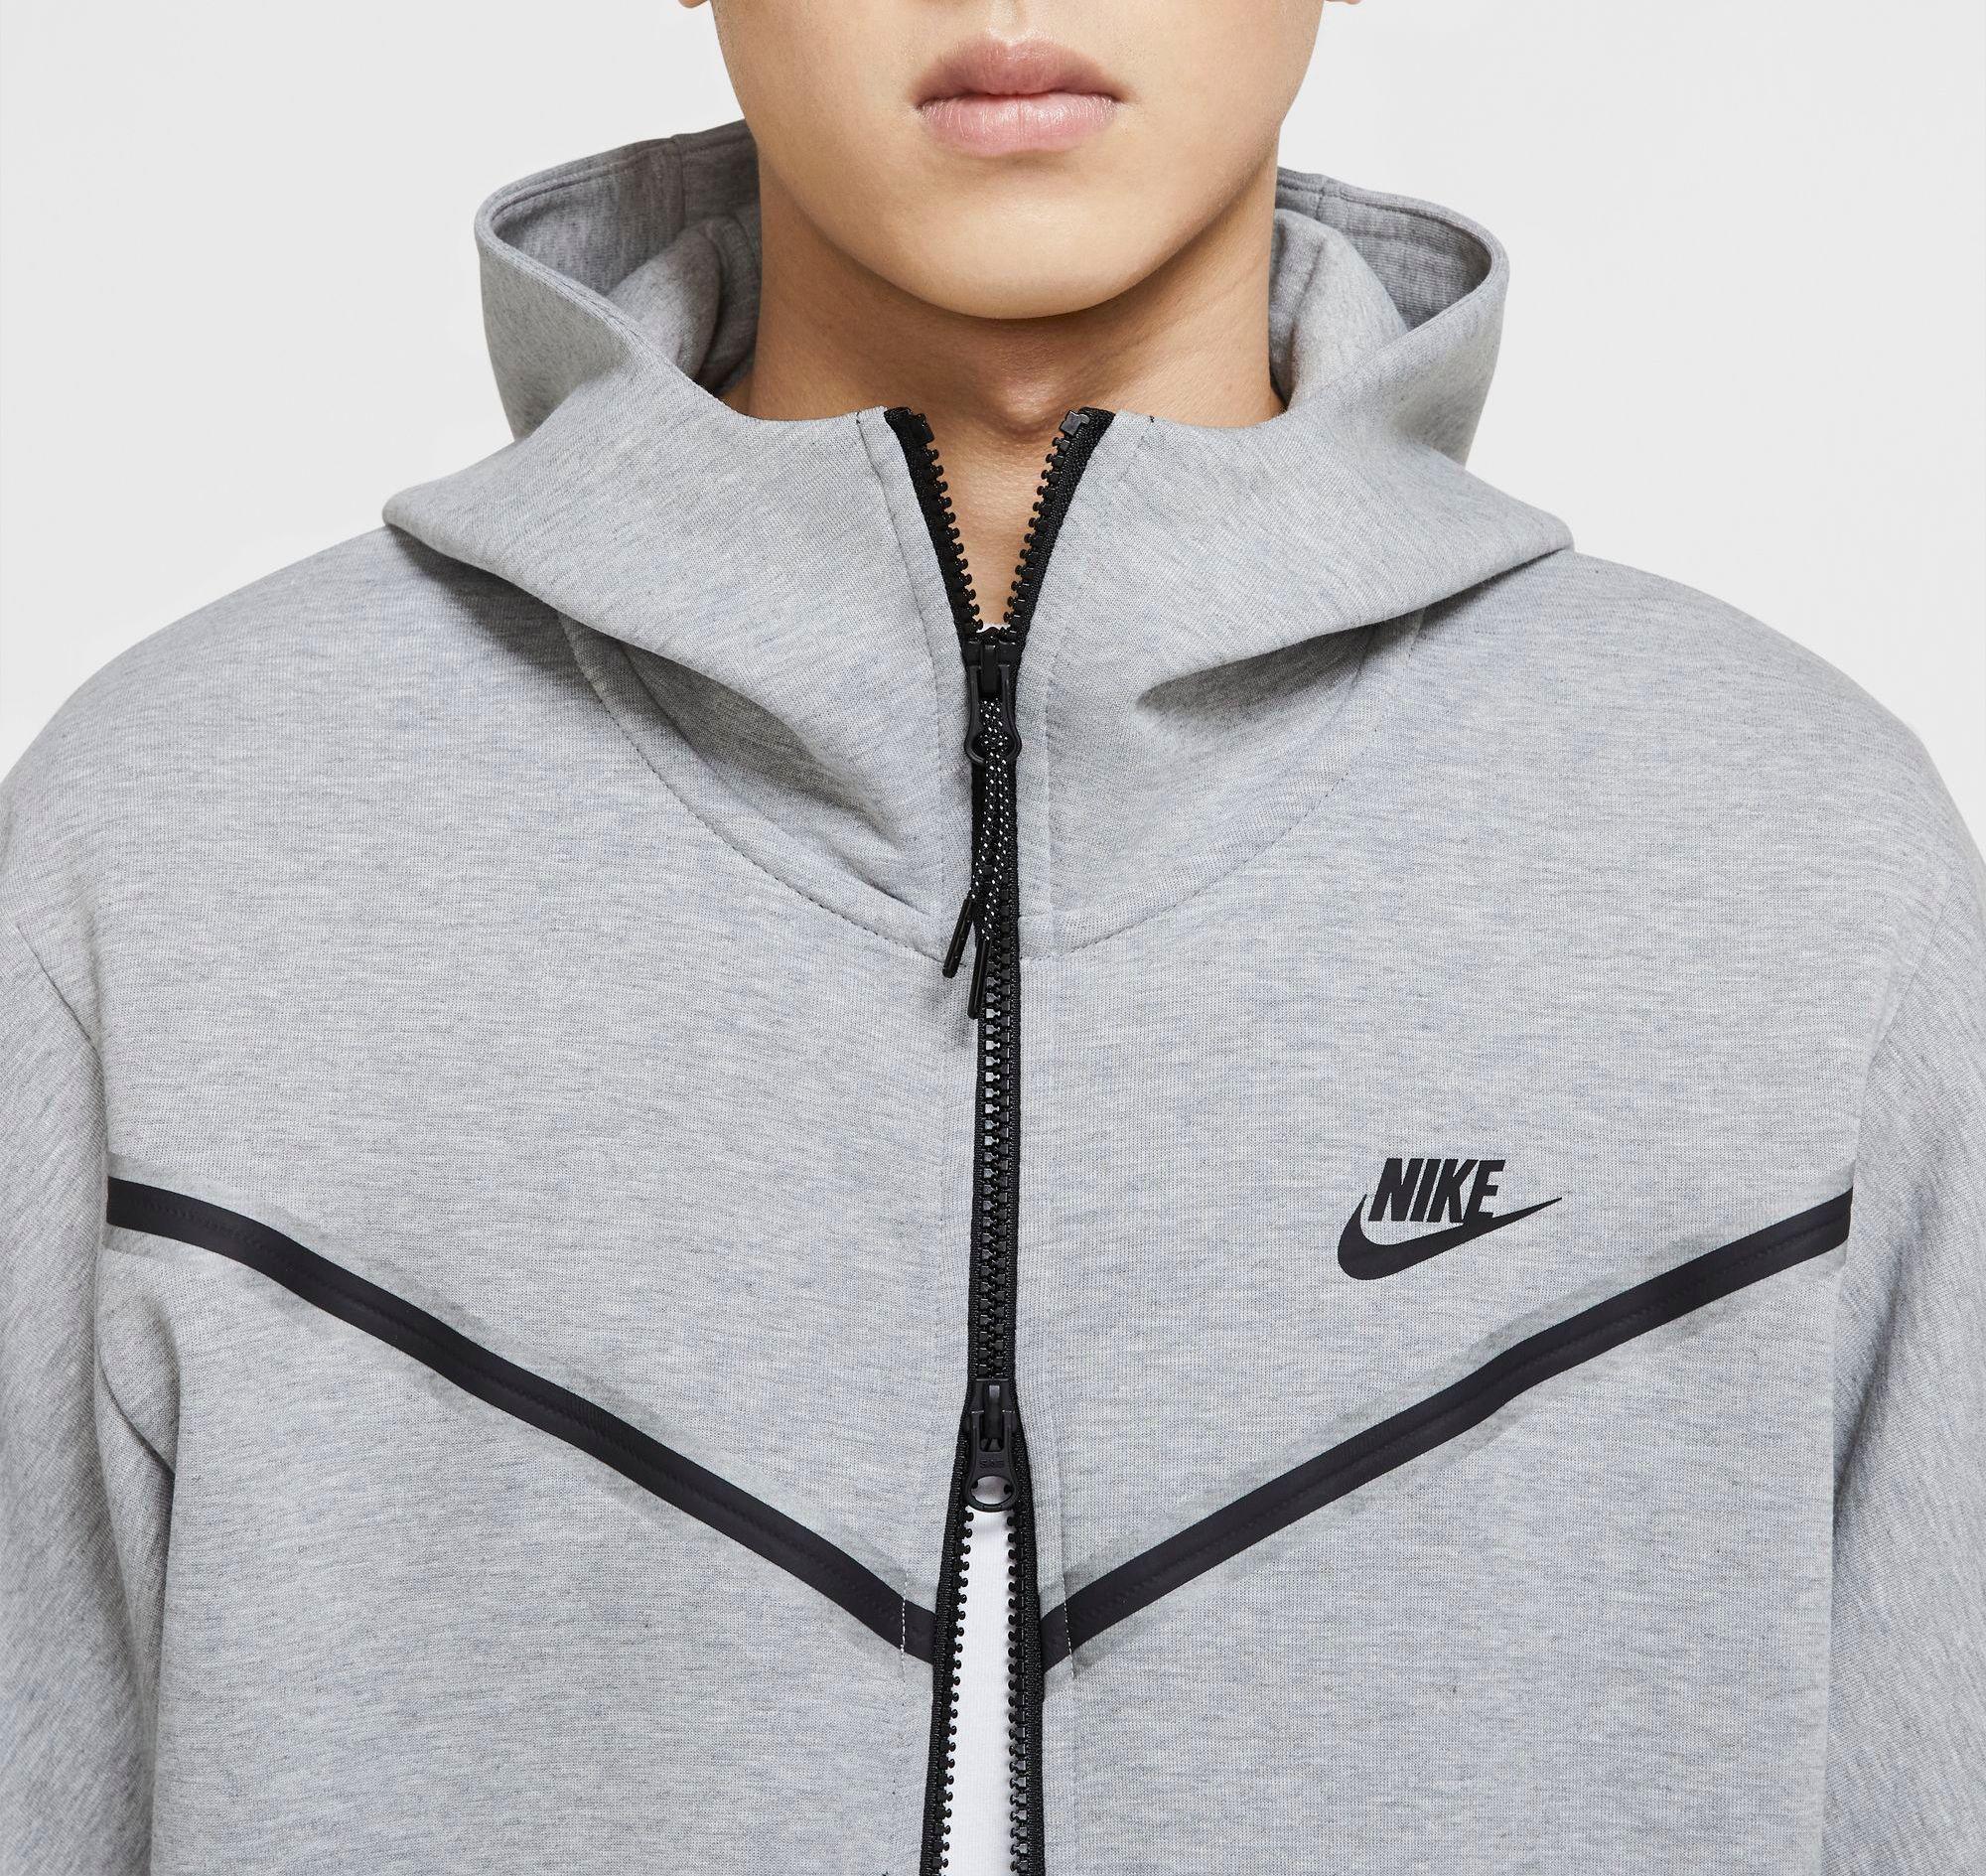 Nike Sportswear Tech Fleece Full-zip Hoodie in dk Grey Heather/Black (Gray)  for Men - Save 12% | Lyst